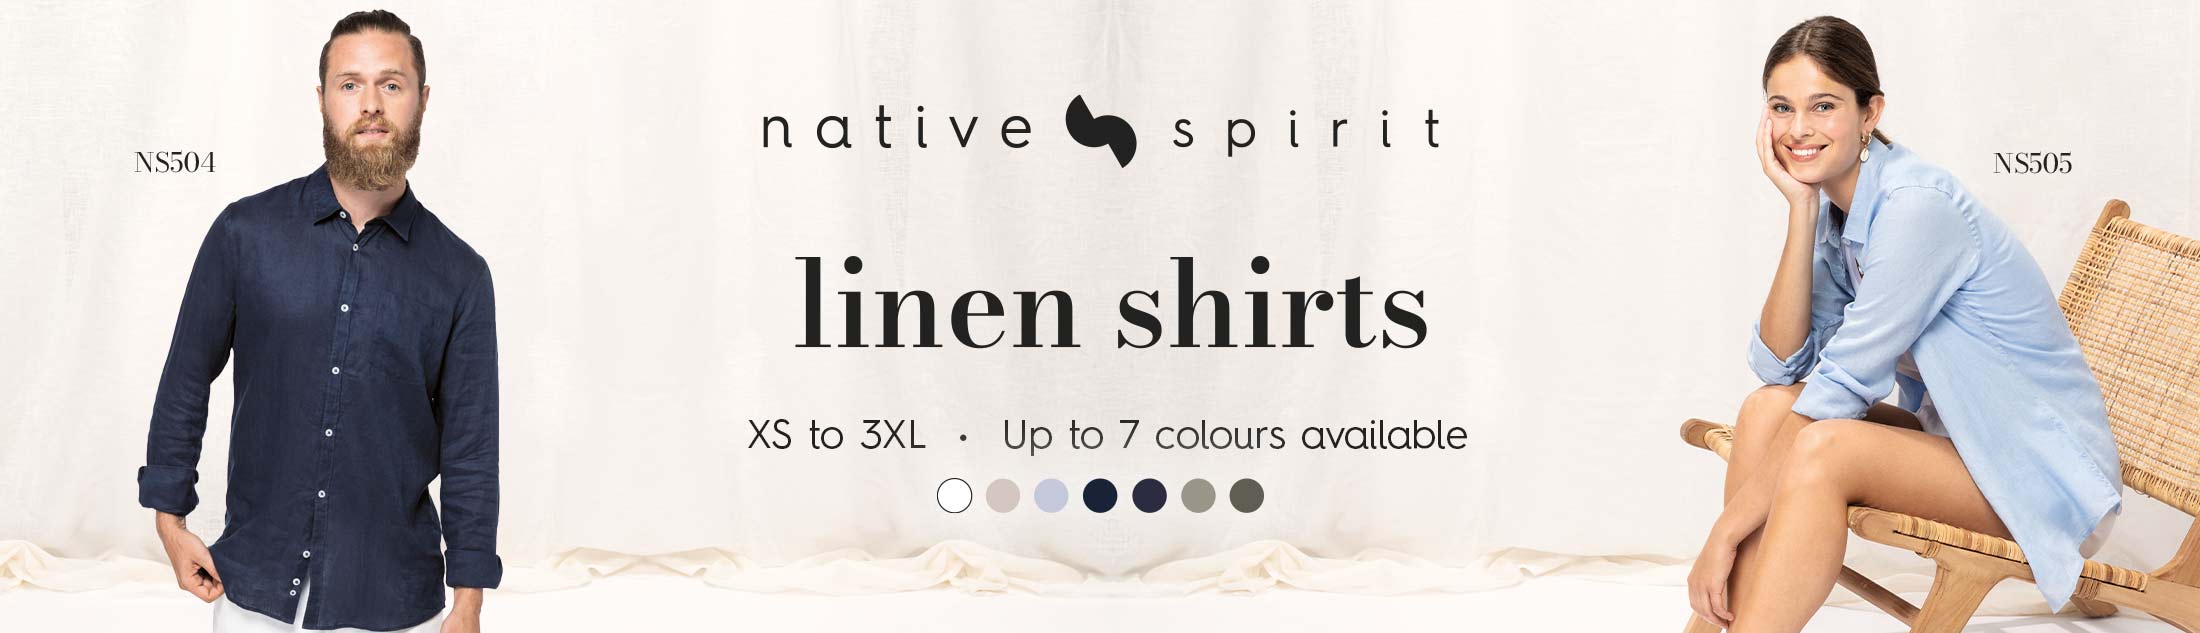 Native Spirit linen shirts